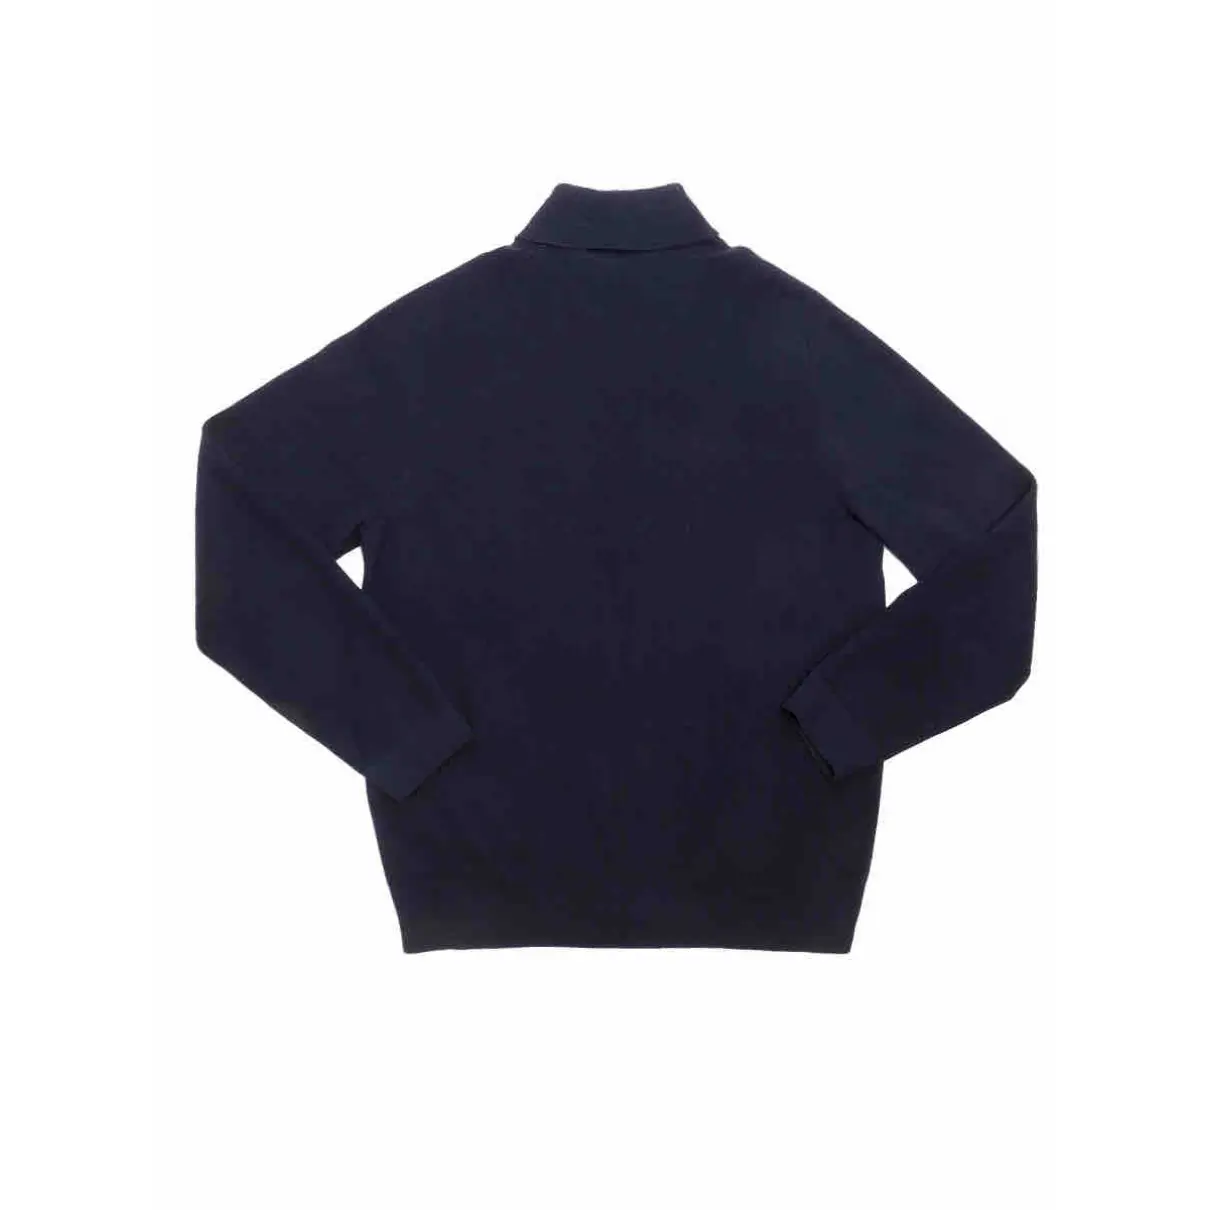 Buy Louis Vuitton Wool knitwear & sweatshirt online